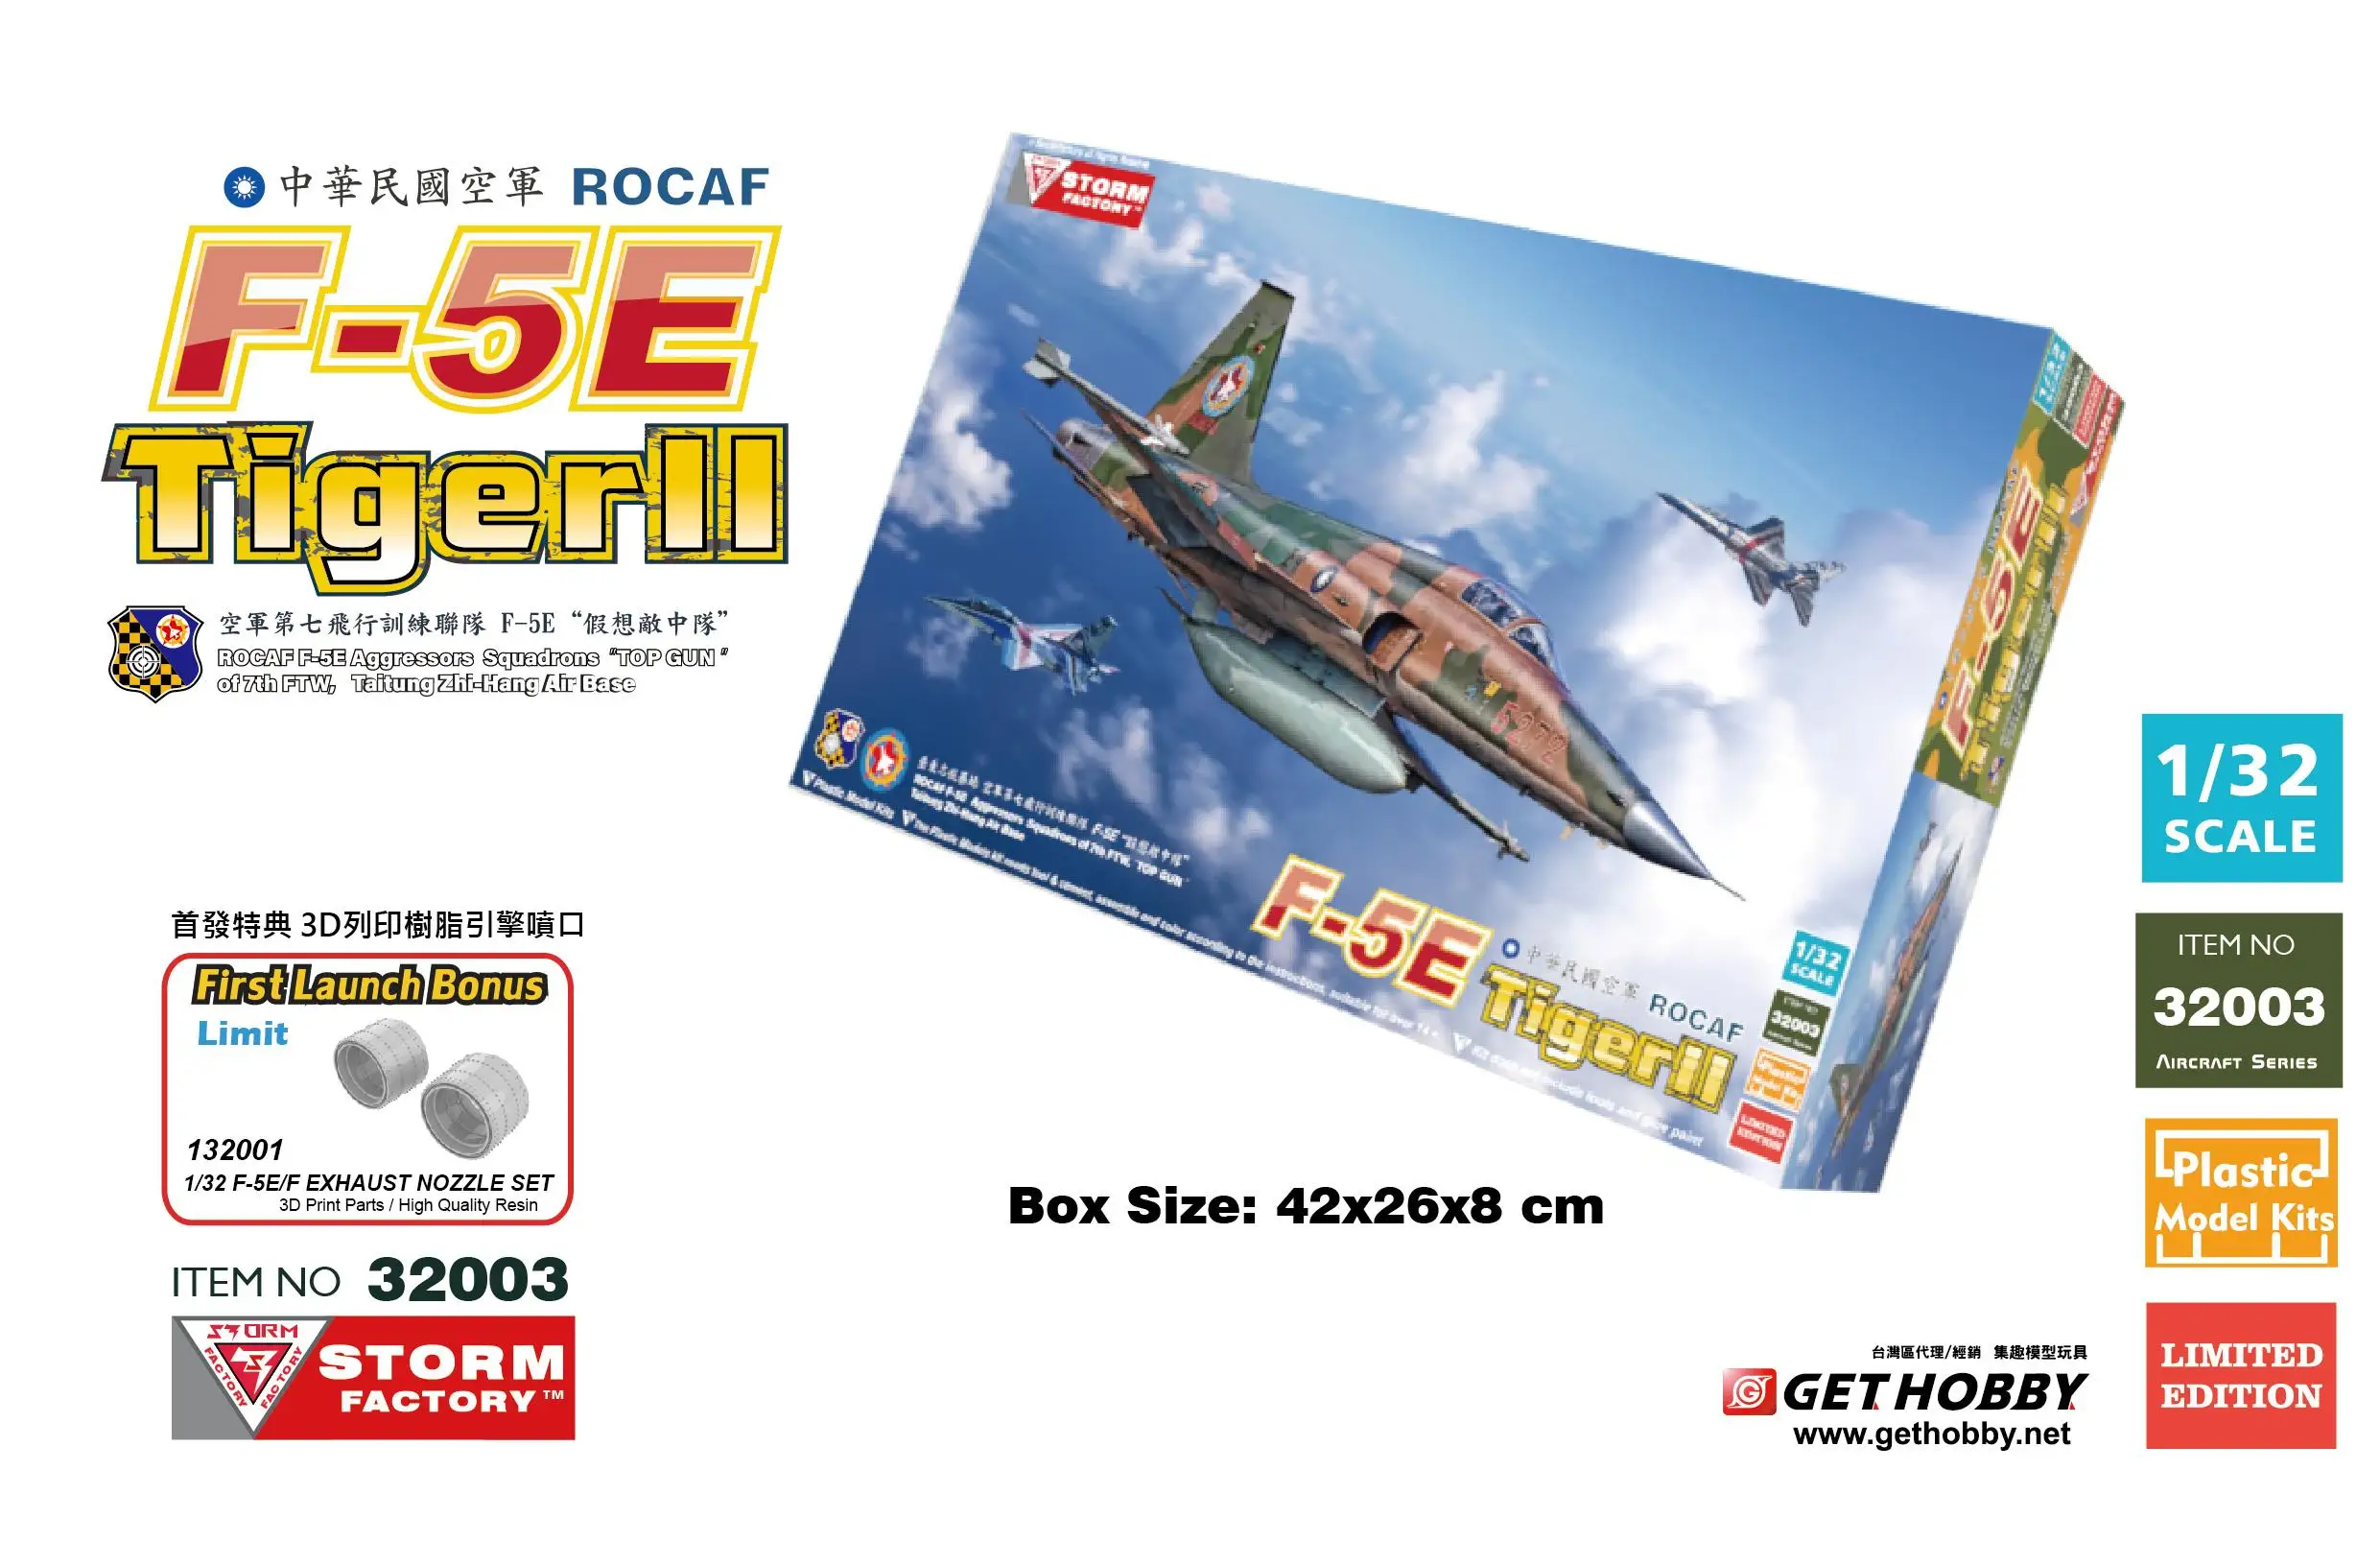 

Storm Factory Freedom 32003 1/32 ROCAF F-5E Tiger II 7 th FTW "Top GUN" Model